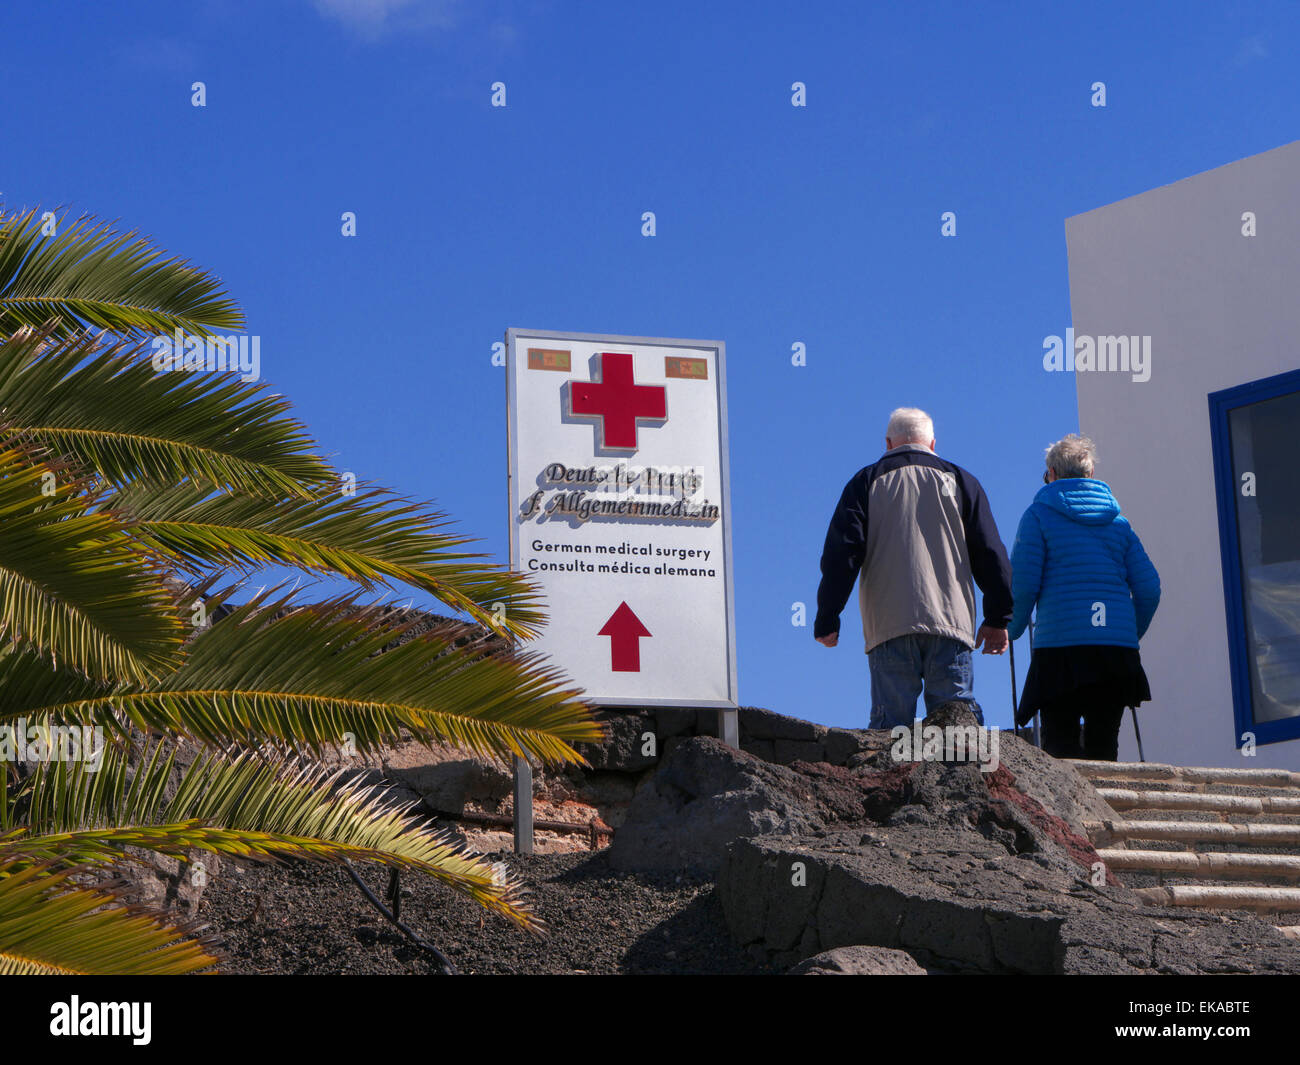 Medizinische Behandlung für die Krankheit im Ausland älteres Ehepaar und Zeichen für die lokale private Klinik Pflege in Kanaren Spanien EU mit blauem Himmel & Palmen Stockfoto